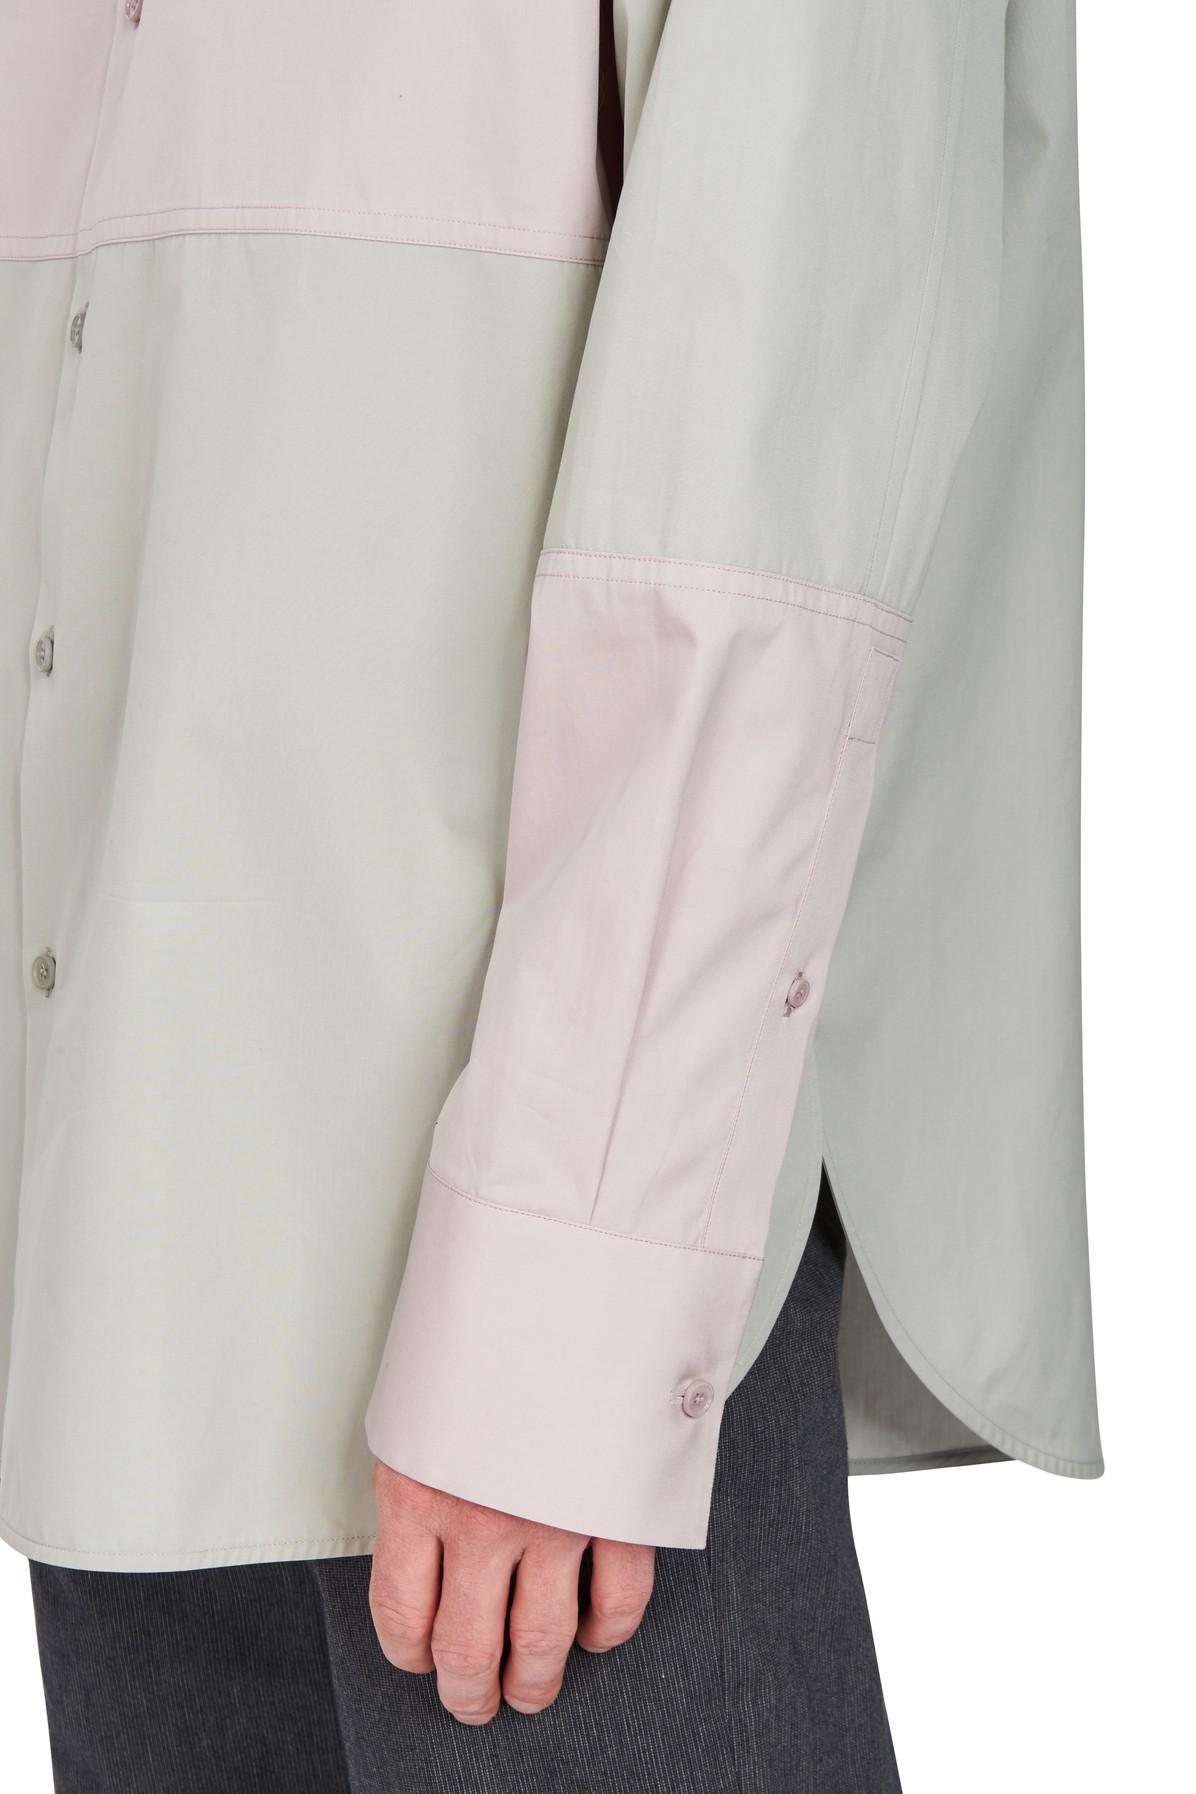 OAMC Poplin Long Sleeve Shirt in Light Grey (Gray) for Men - Lyst